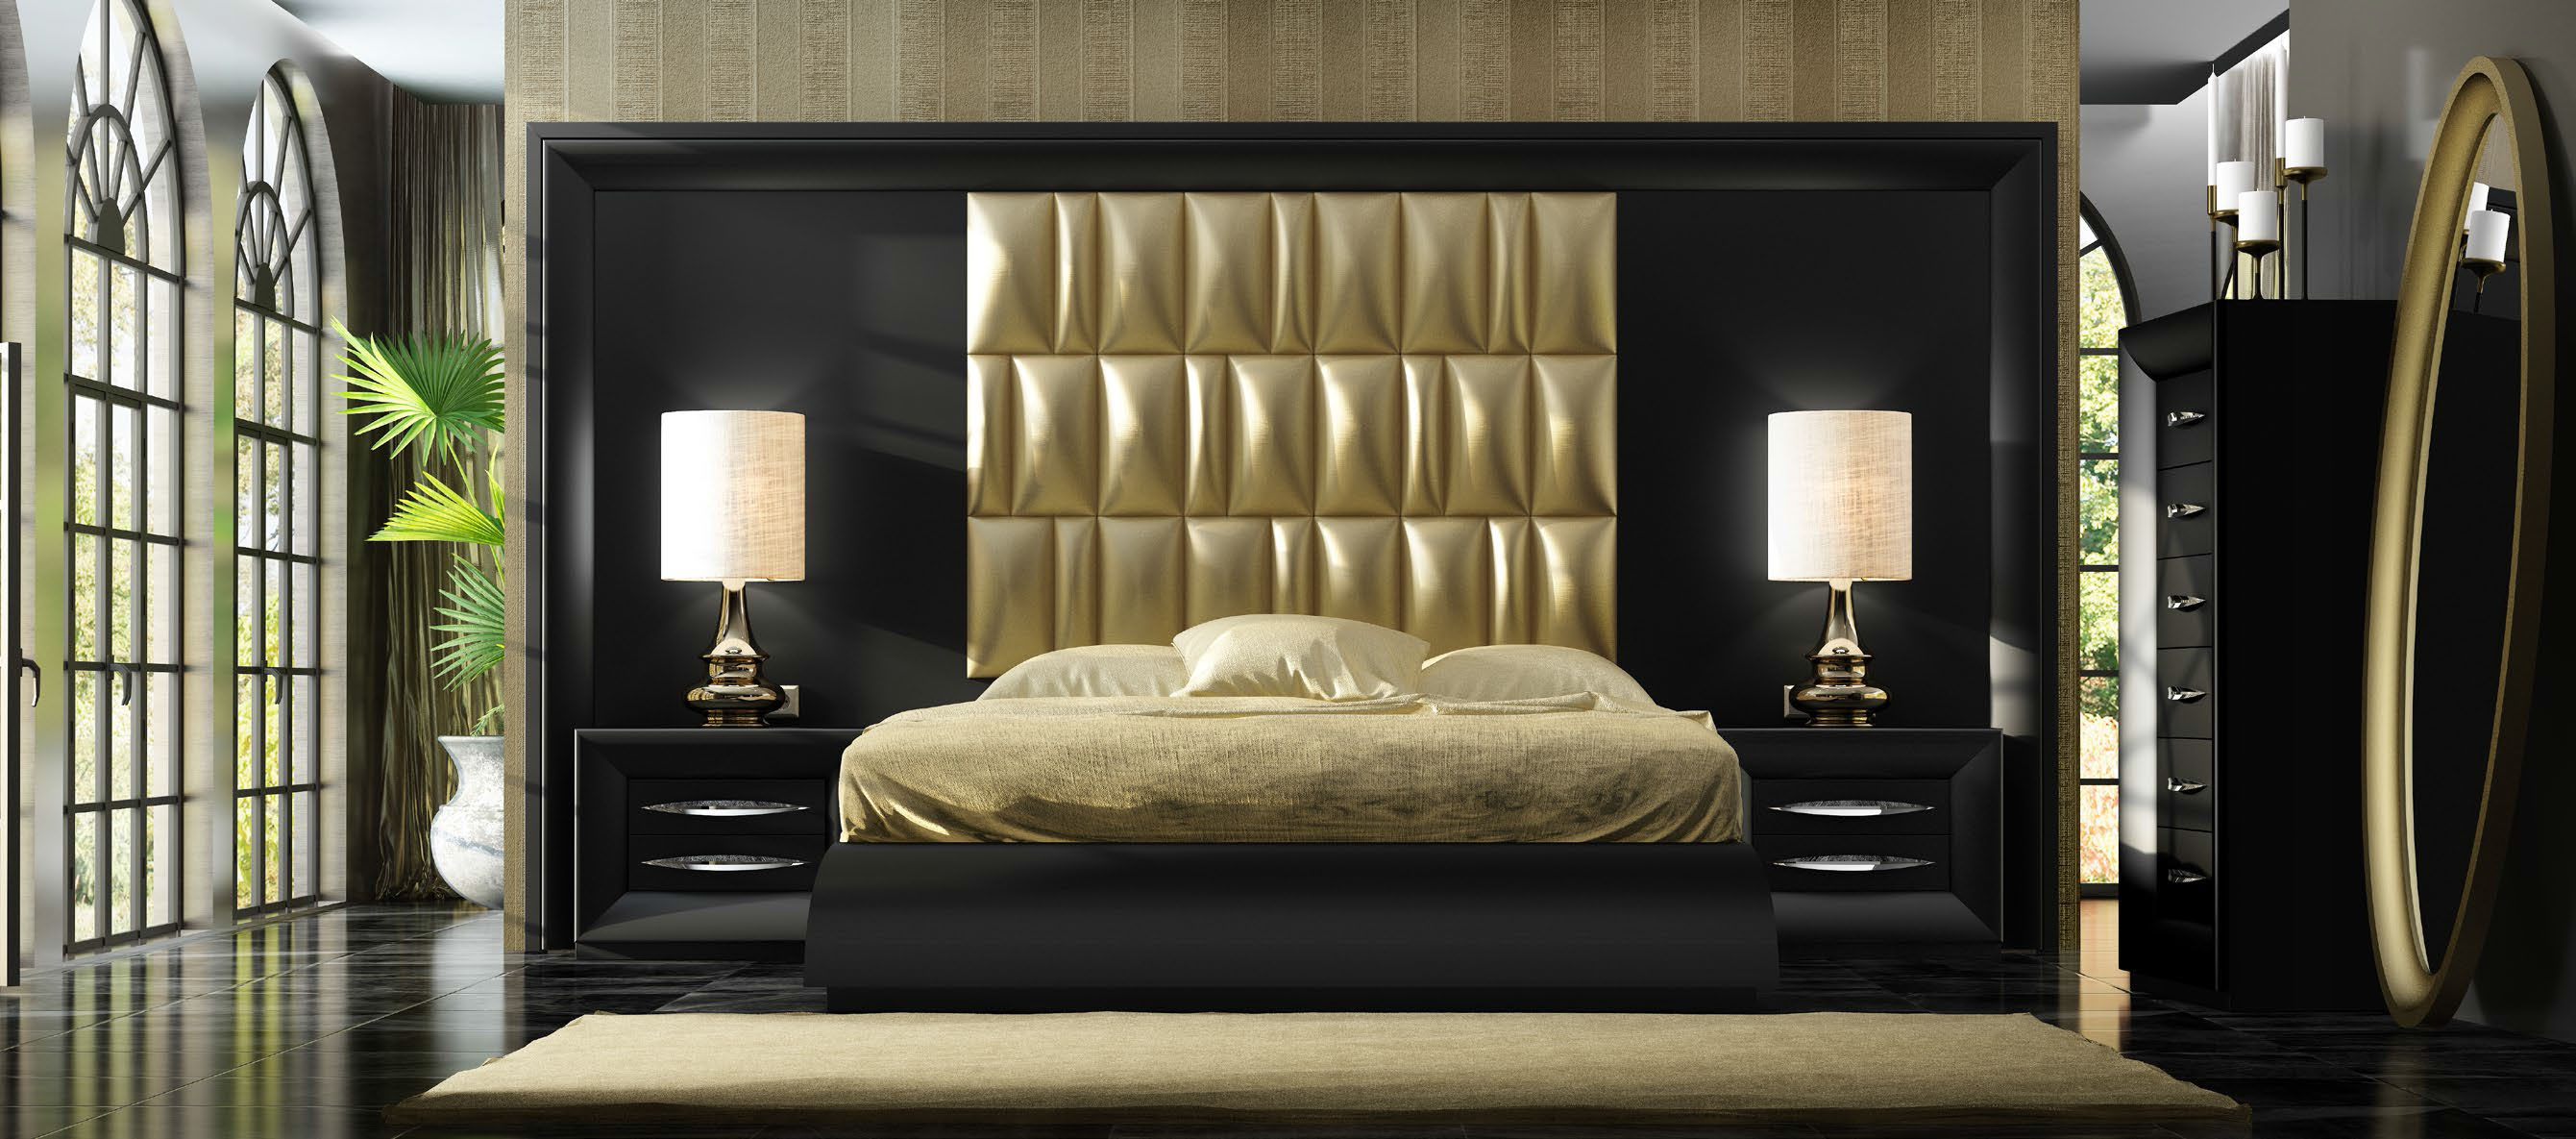 Brands Franco Furniture Avanty Bedrooms, Spain DOR 133